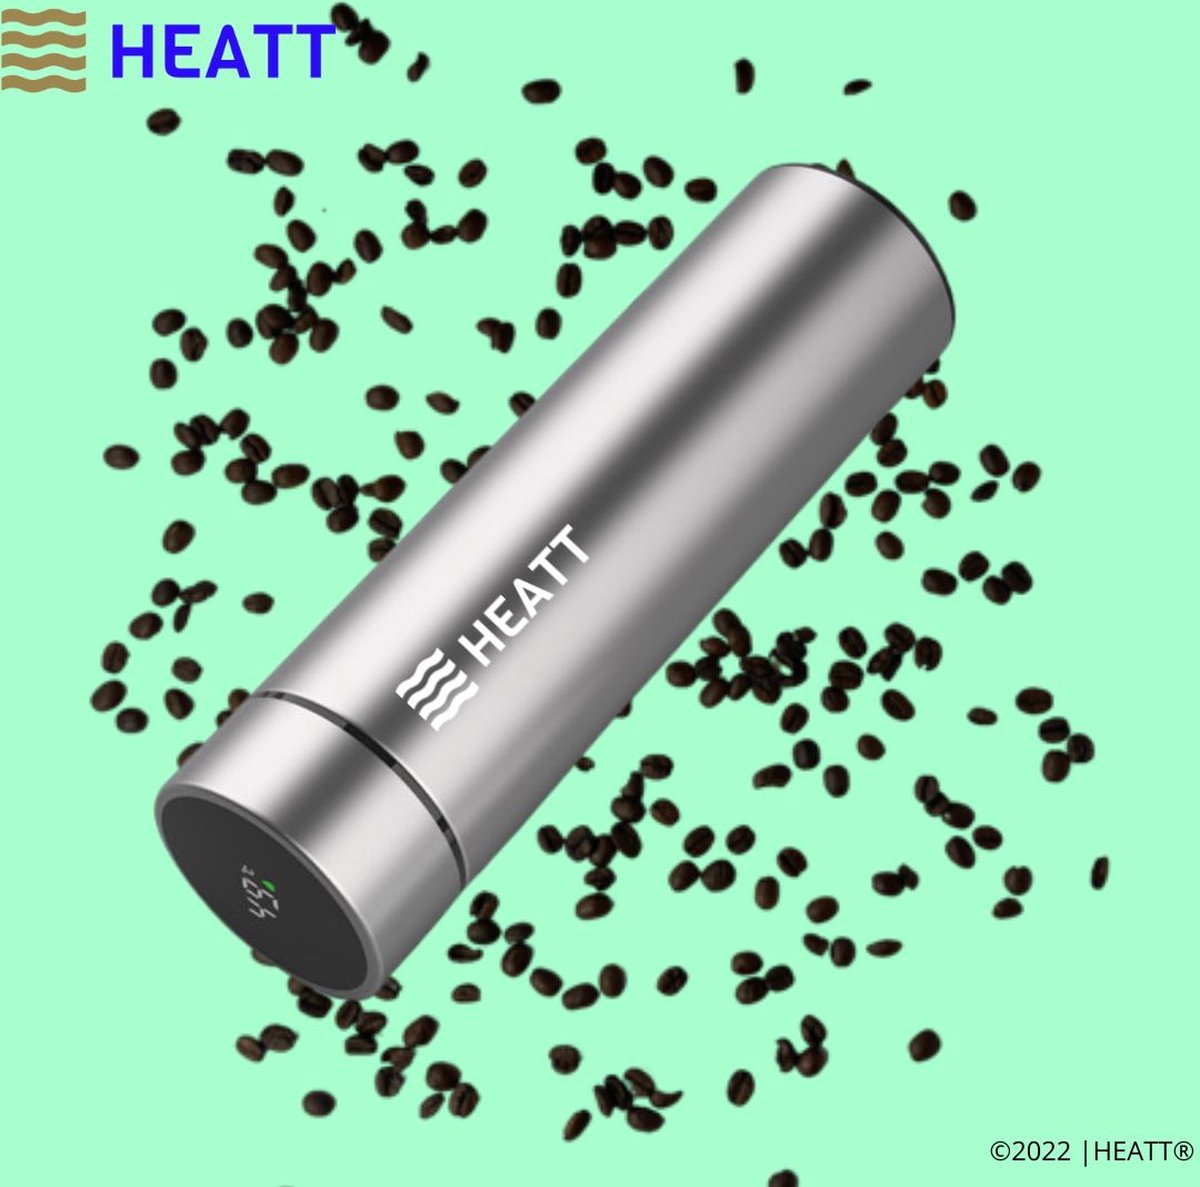 HEATT | De slimme thermosbeker - Zilver - Thermosbeker - Thermosfles - 12 uur warm - 24 uur koud - hermetisch afgesloten thermosbeker - vacuüm afgesloten thermosbeker - thermoskan - koffiebeker - slimme thermosbeker - smart thermosbottle